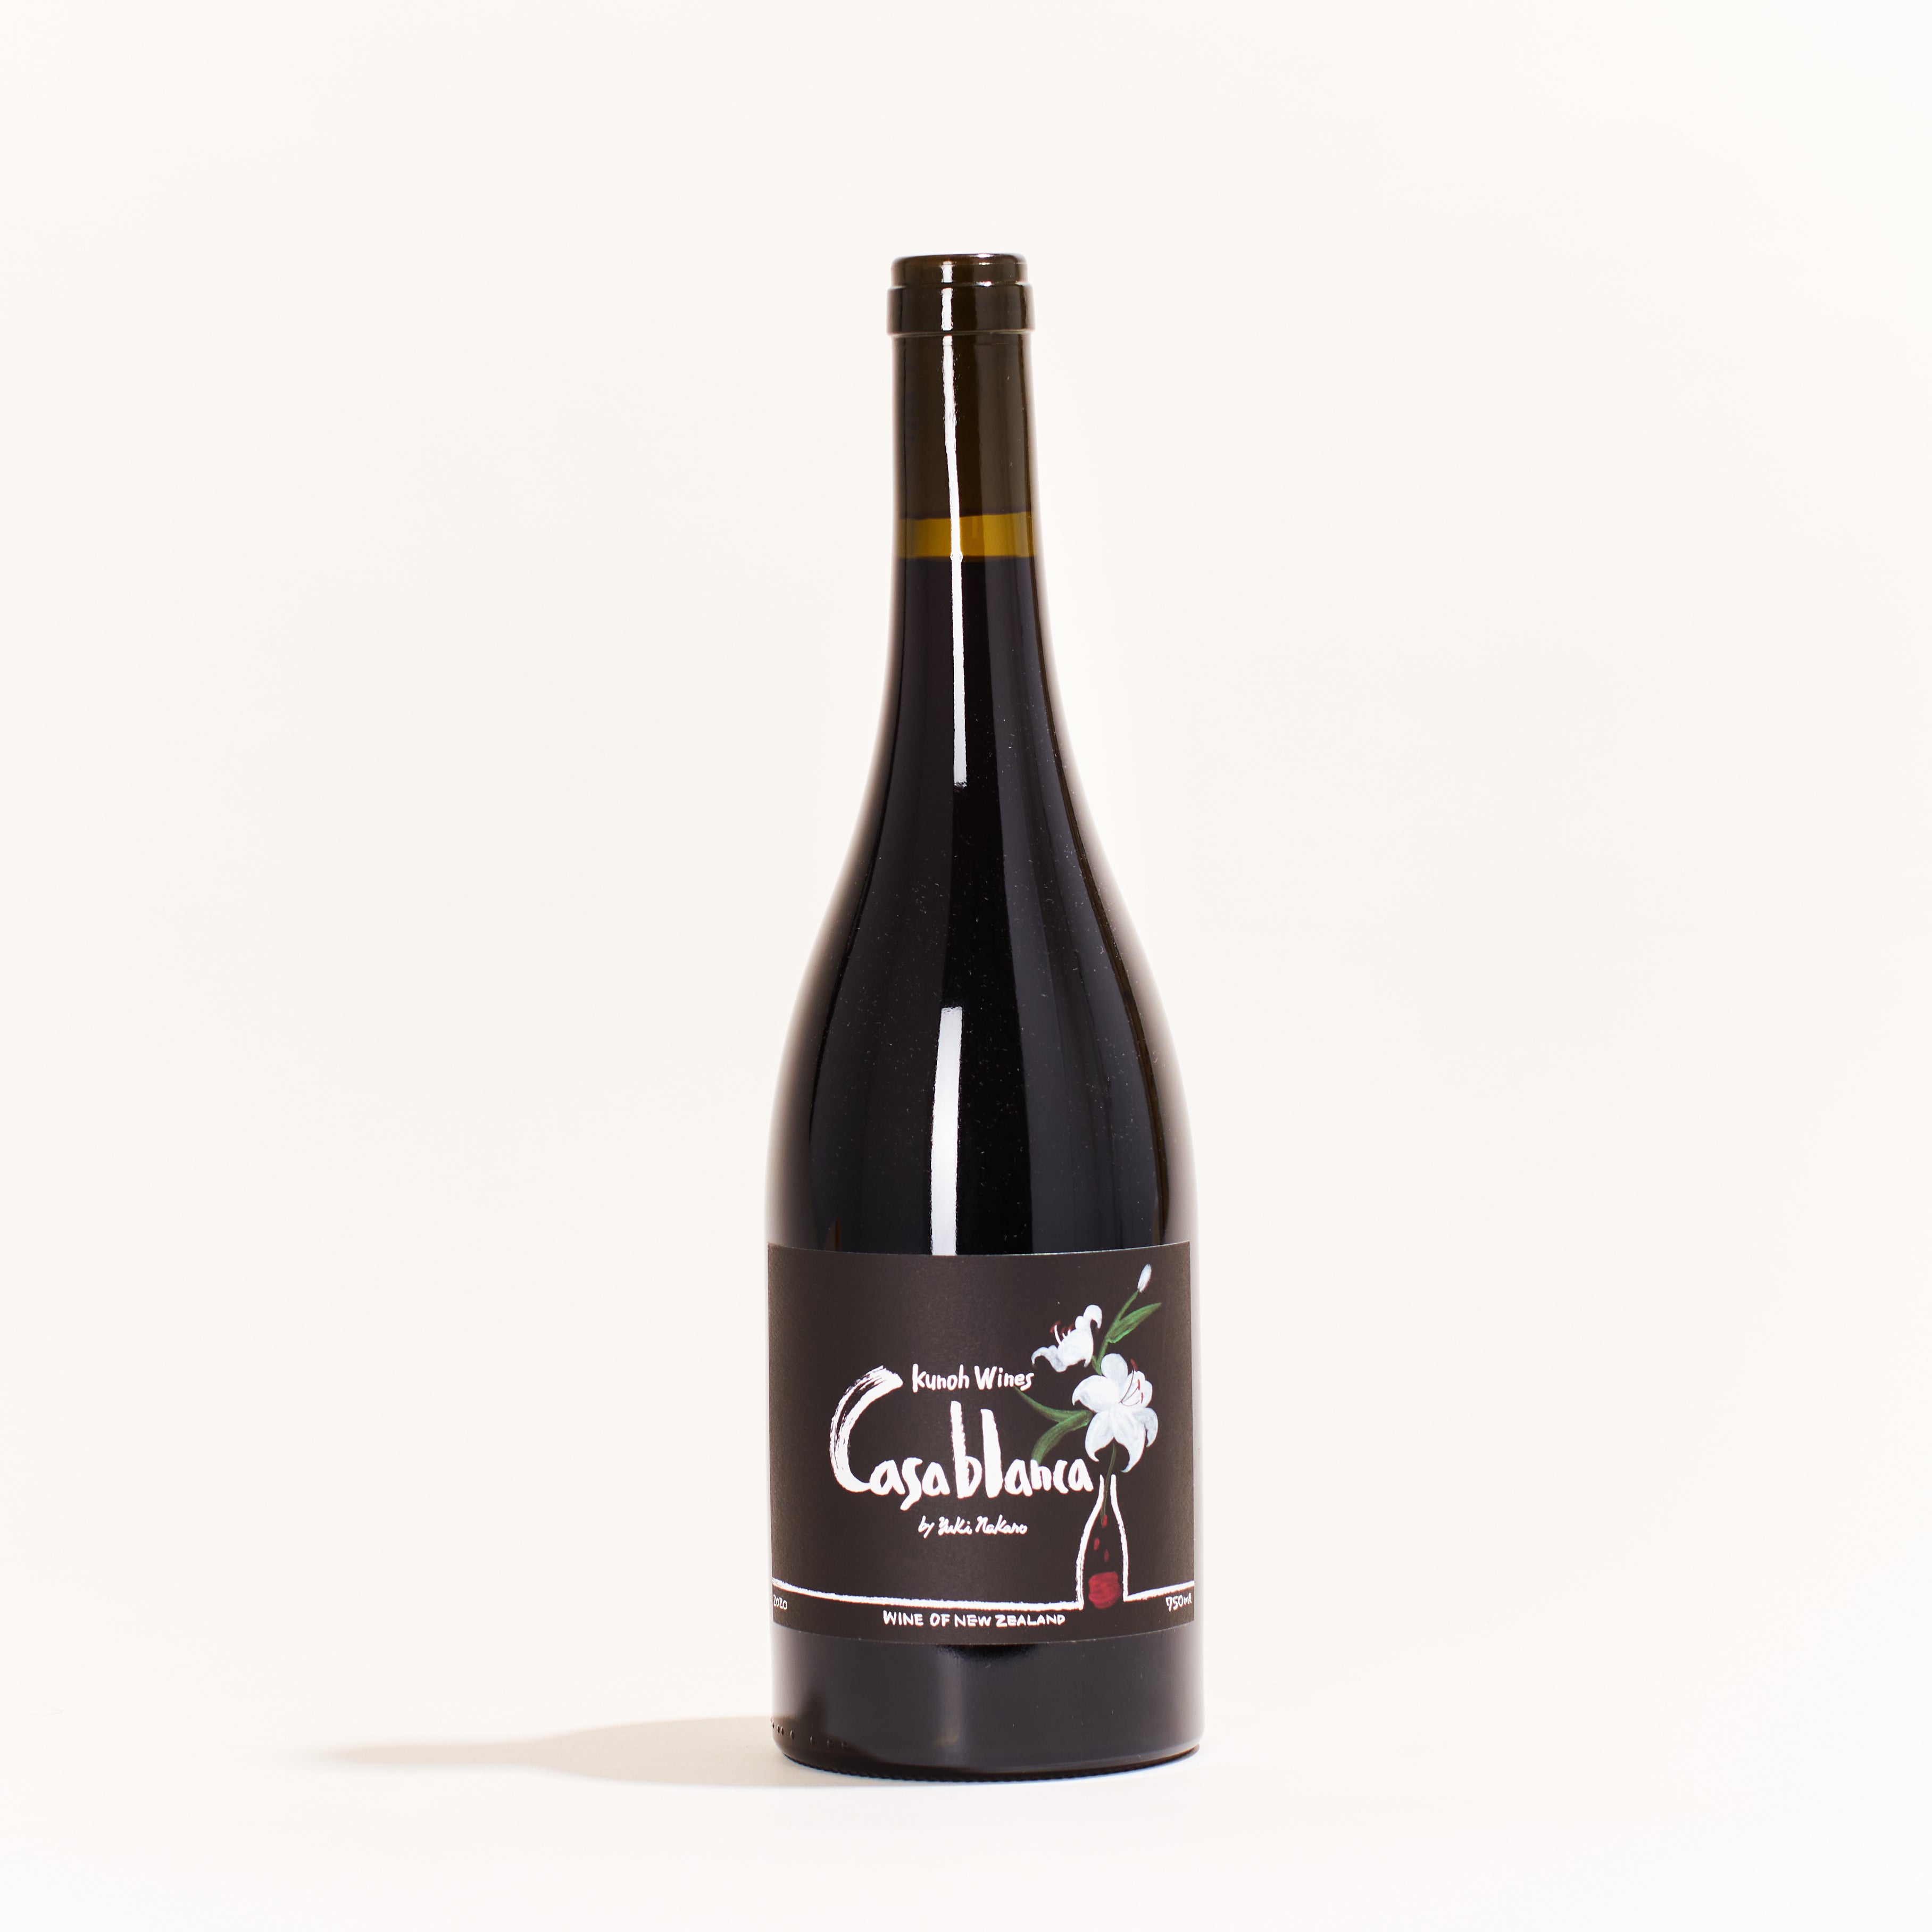 Kunoh Casablanca Pinot Noir natural red wine Nelson New Zealand